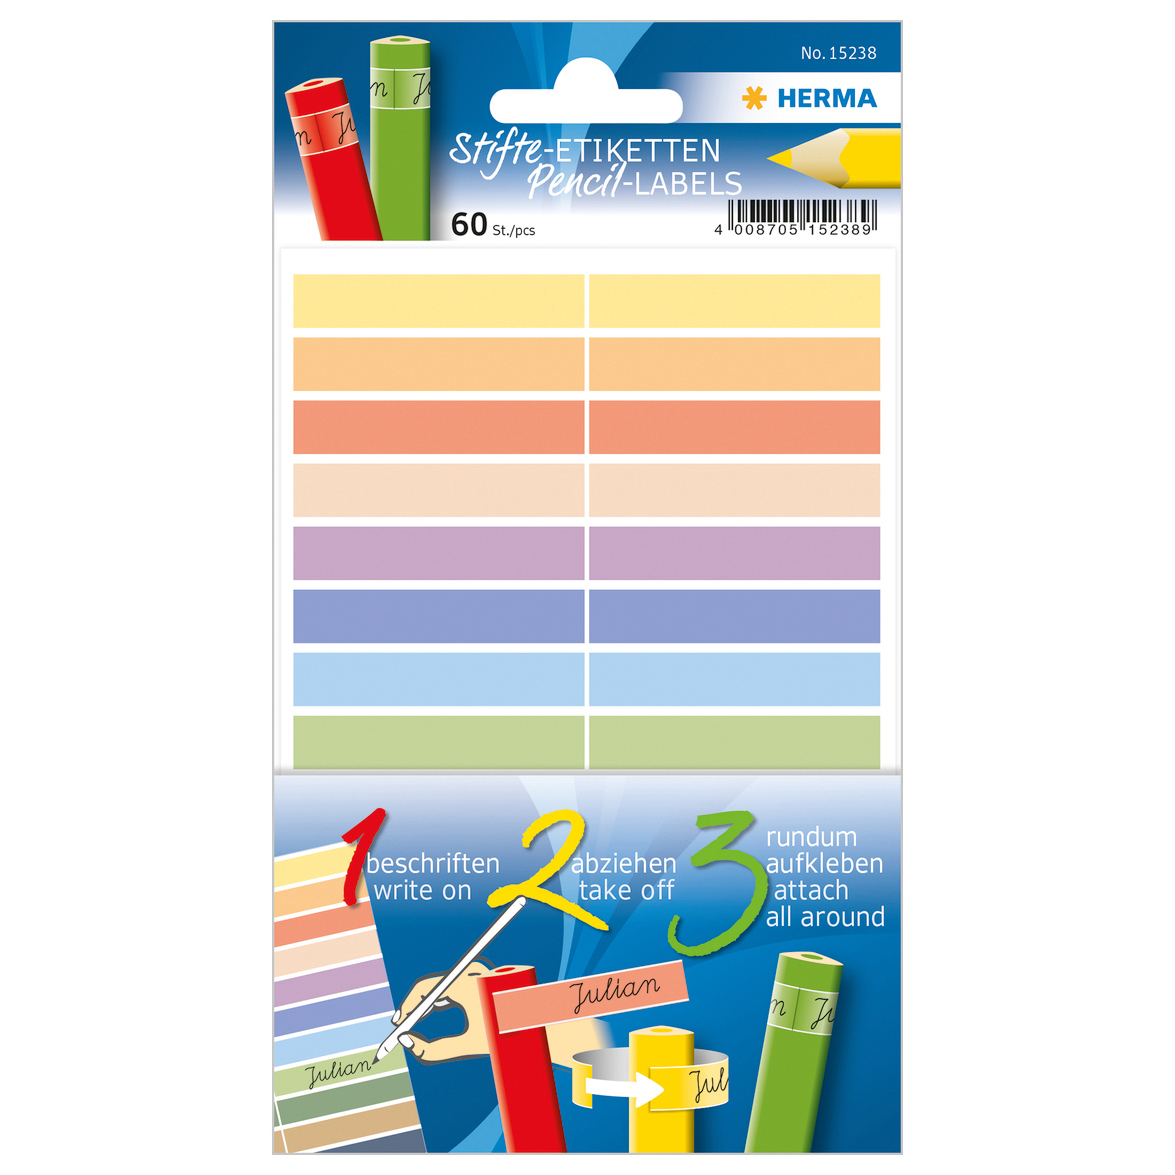 HERMA Étiquettes pour crayons 15238 10x46mm, adhésives